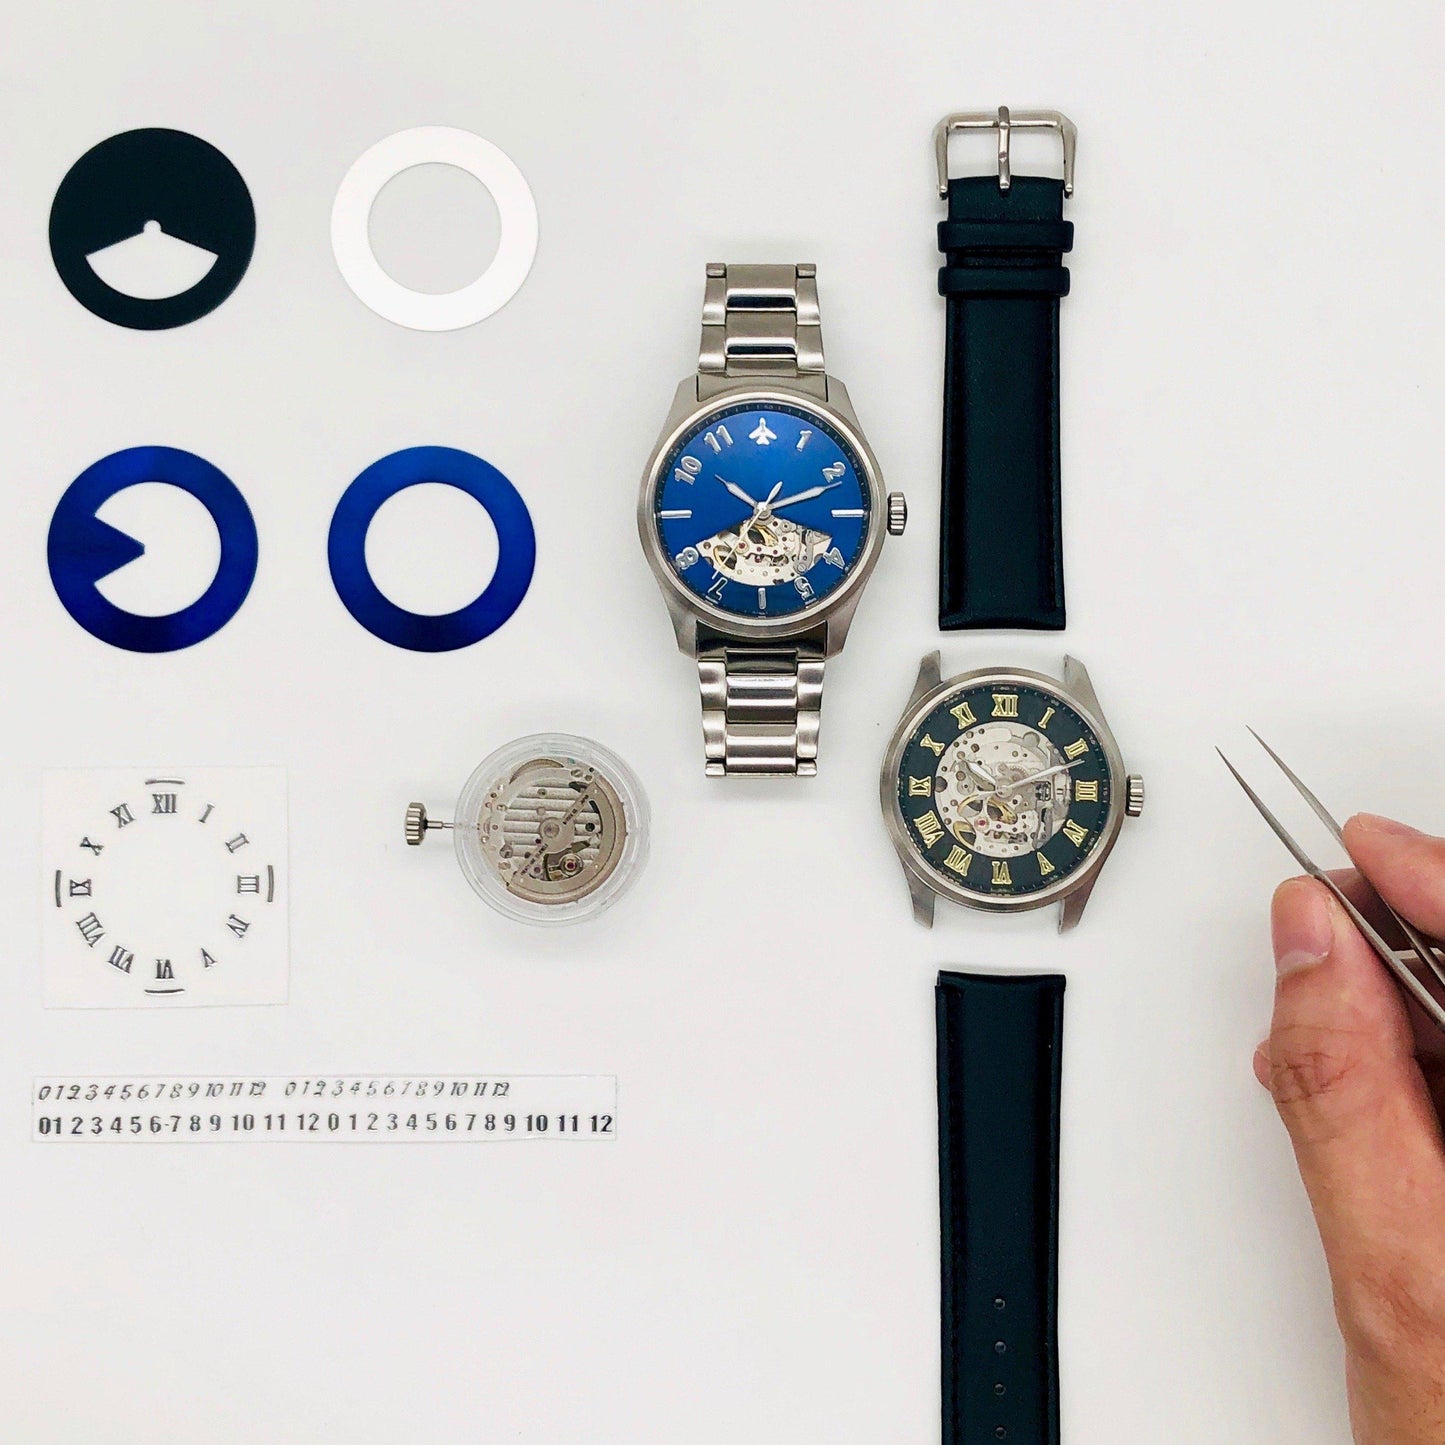 【台北店】日本自動機械錶機芯 - 刻上您的名字DIY手錶工作坊 - Watchmake Factory